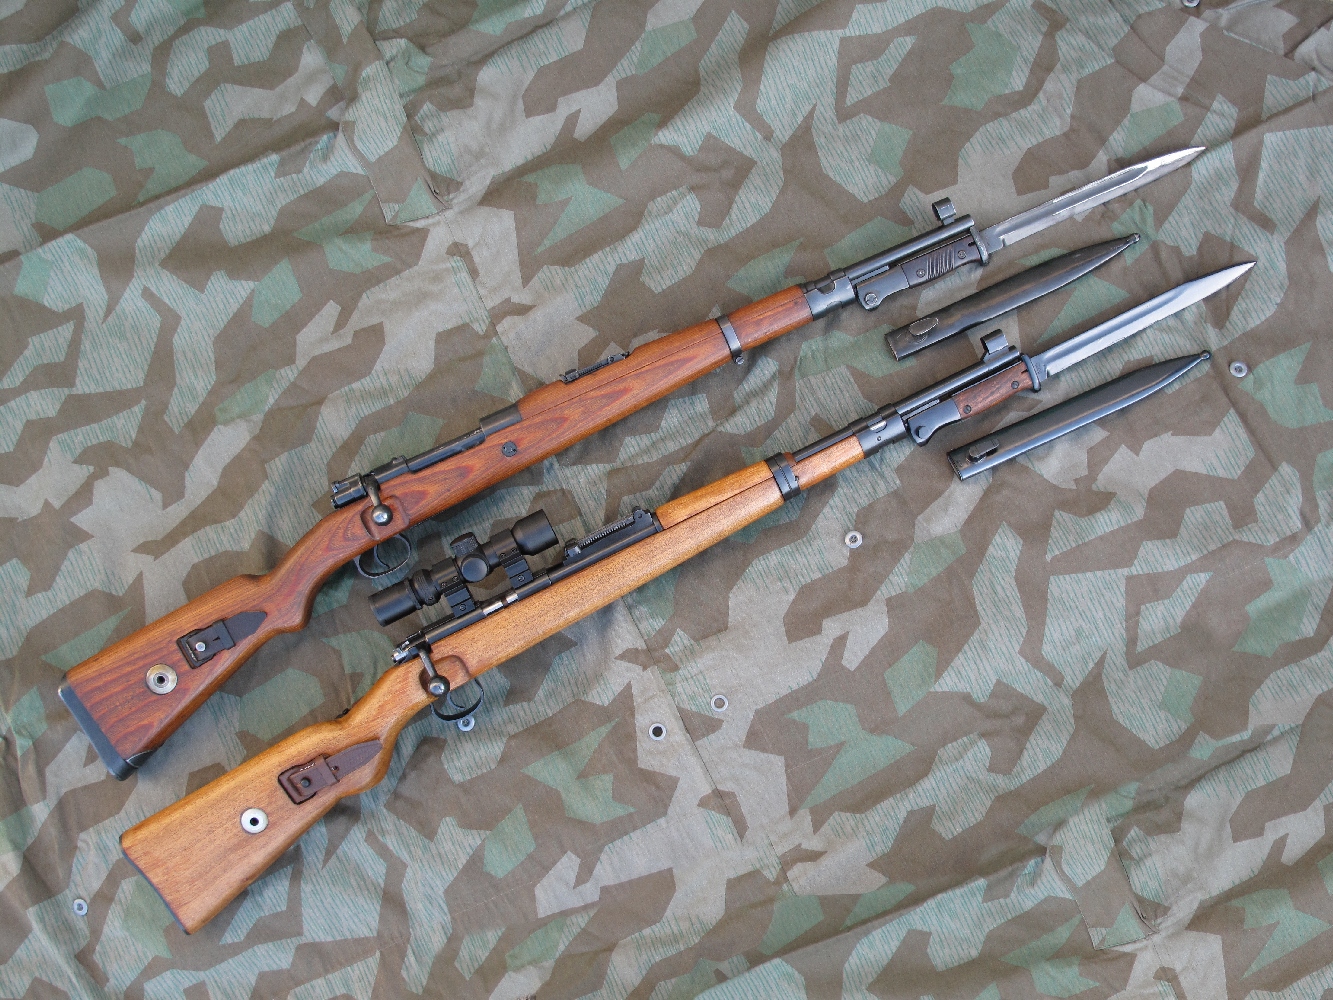 Comparaison entre un authentique mousqueton Gewehr 33/40 « Gebirgsjäger » daté de 1942 et une carabine Norinco JW-25A (au-dessous) sur laquelle ont été installées une bretelle (copie) et une baïonnette (copie fabriquée en Inde). Ces deux armes nous ont été confiées par la société AAS (www.aassniper98.com).